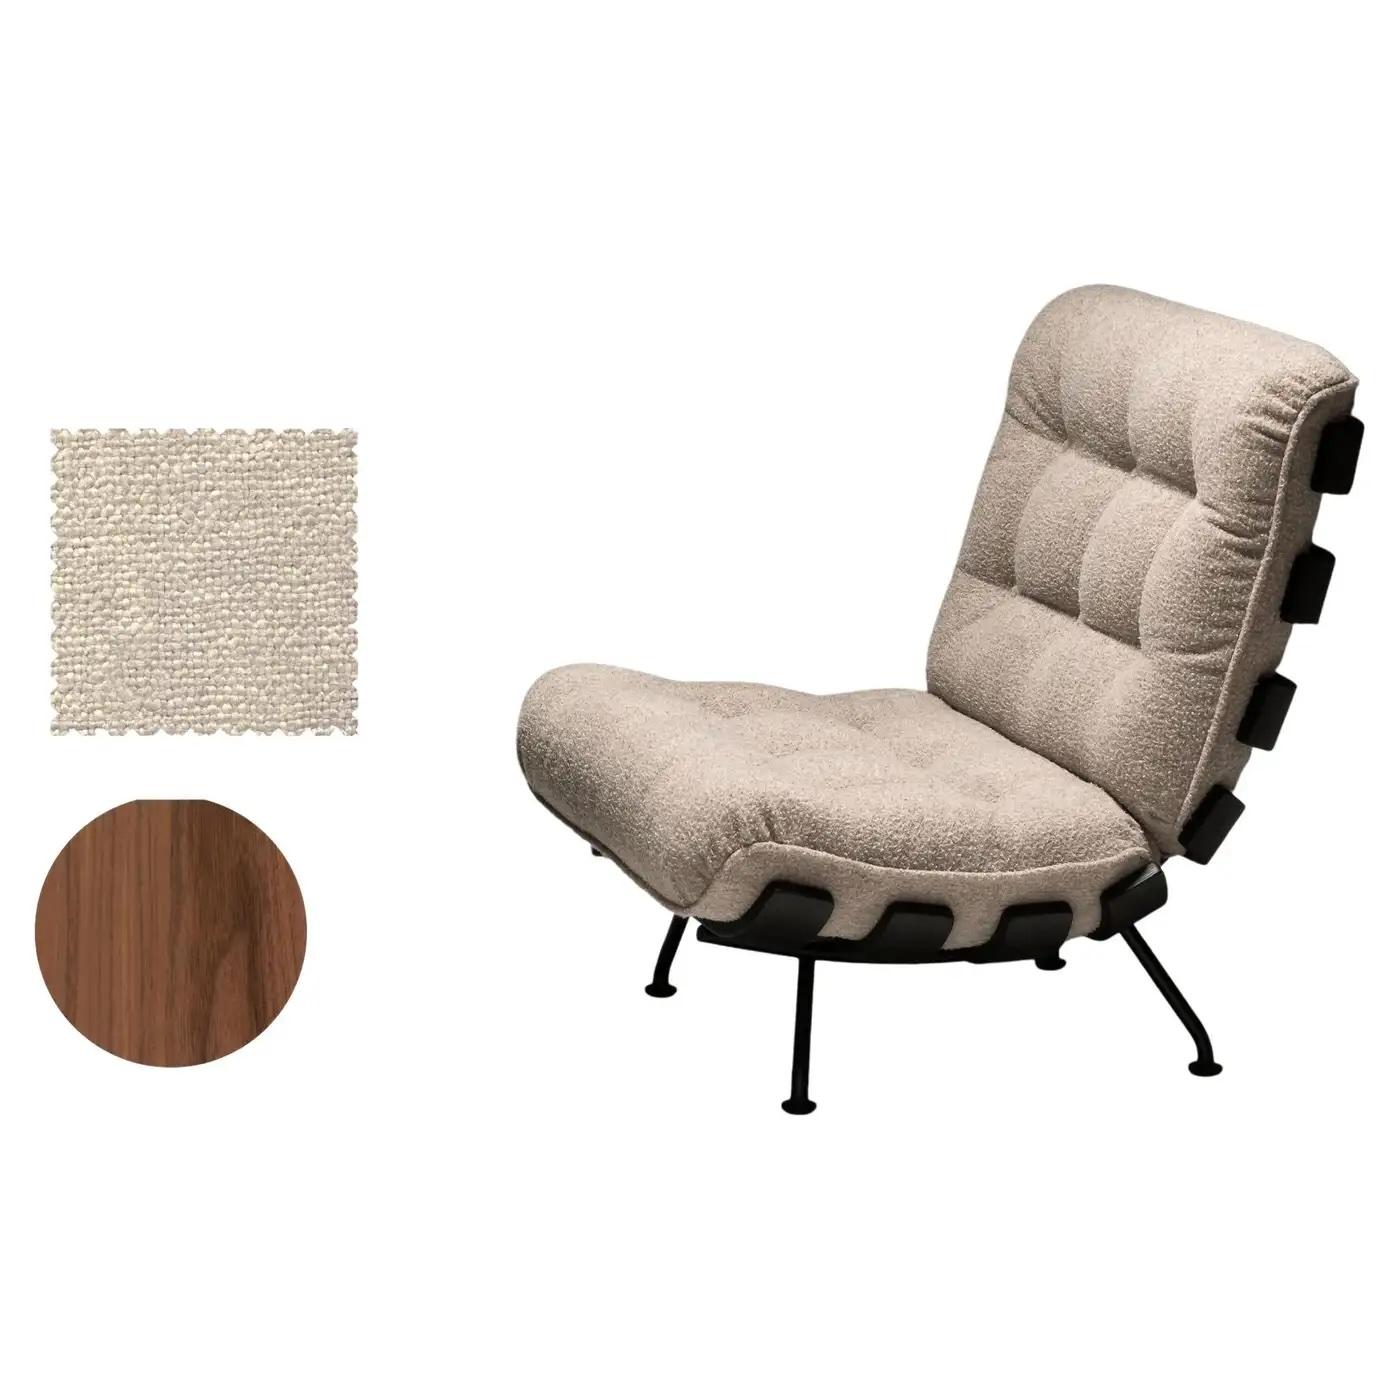 Tacchini Lounge Chairs